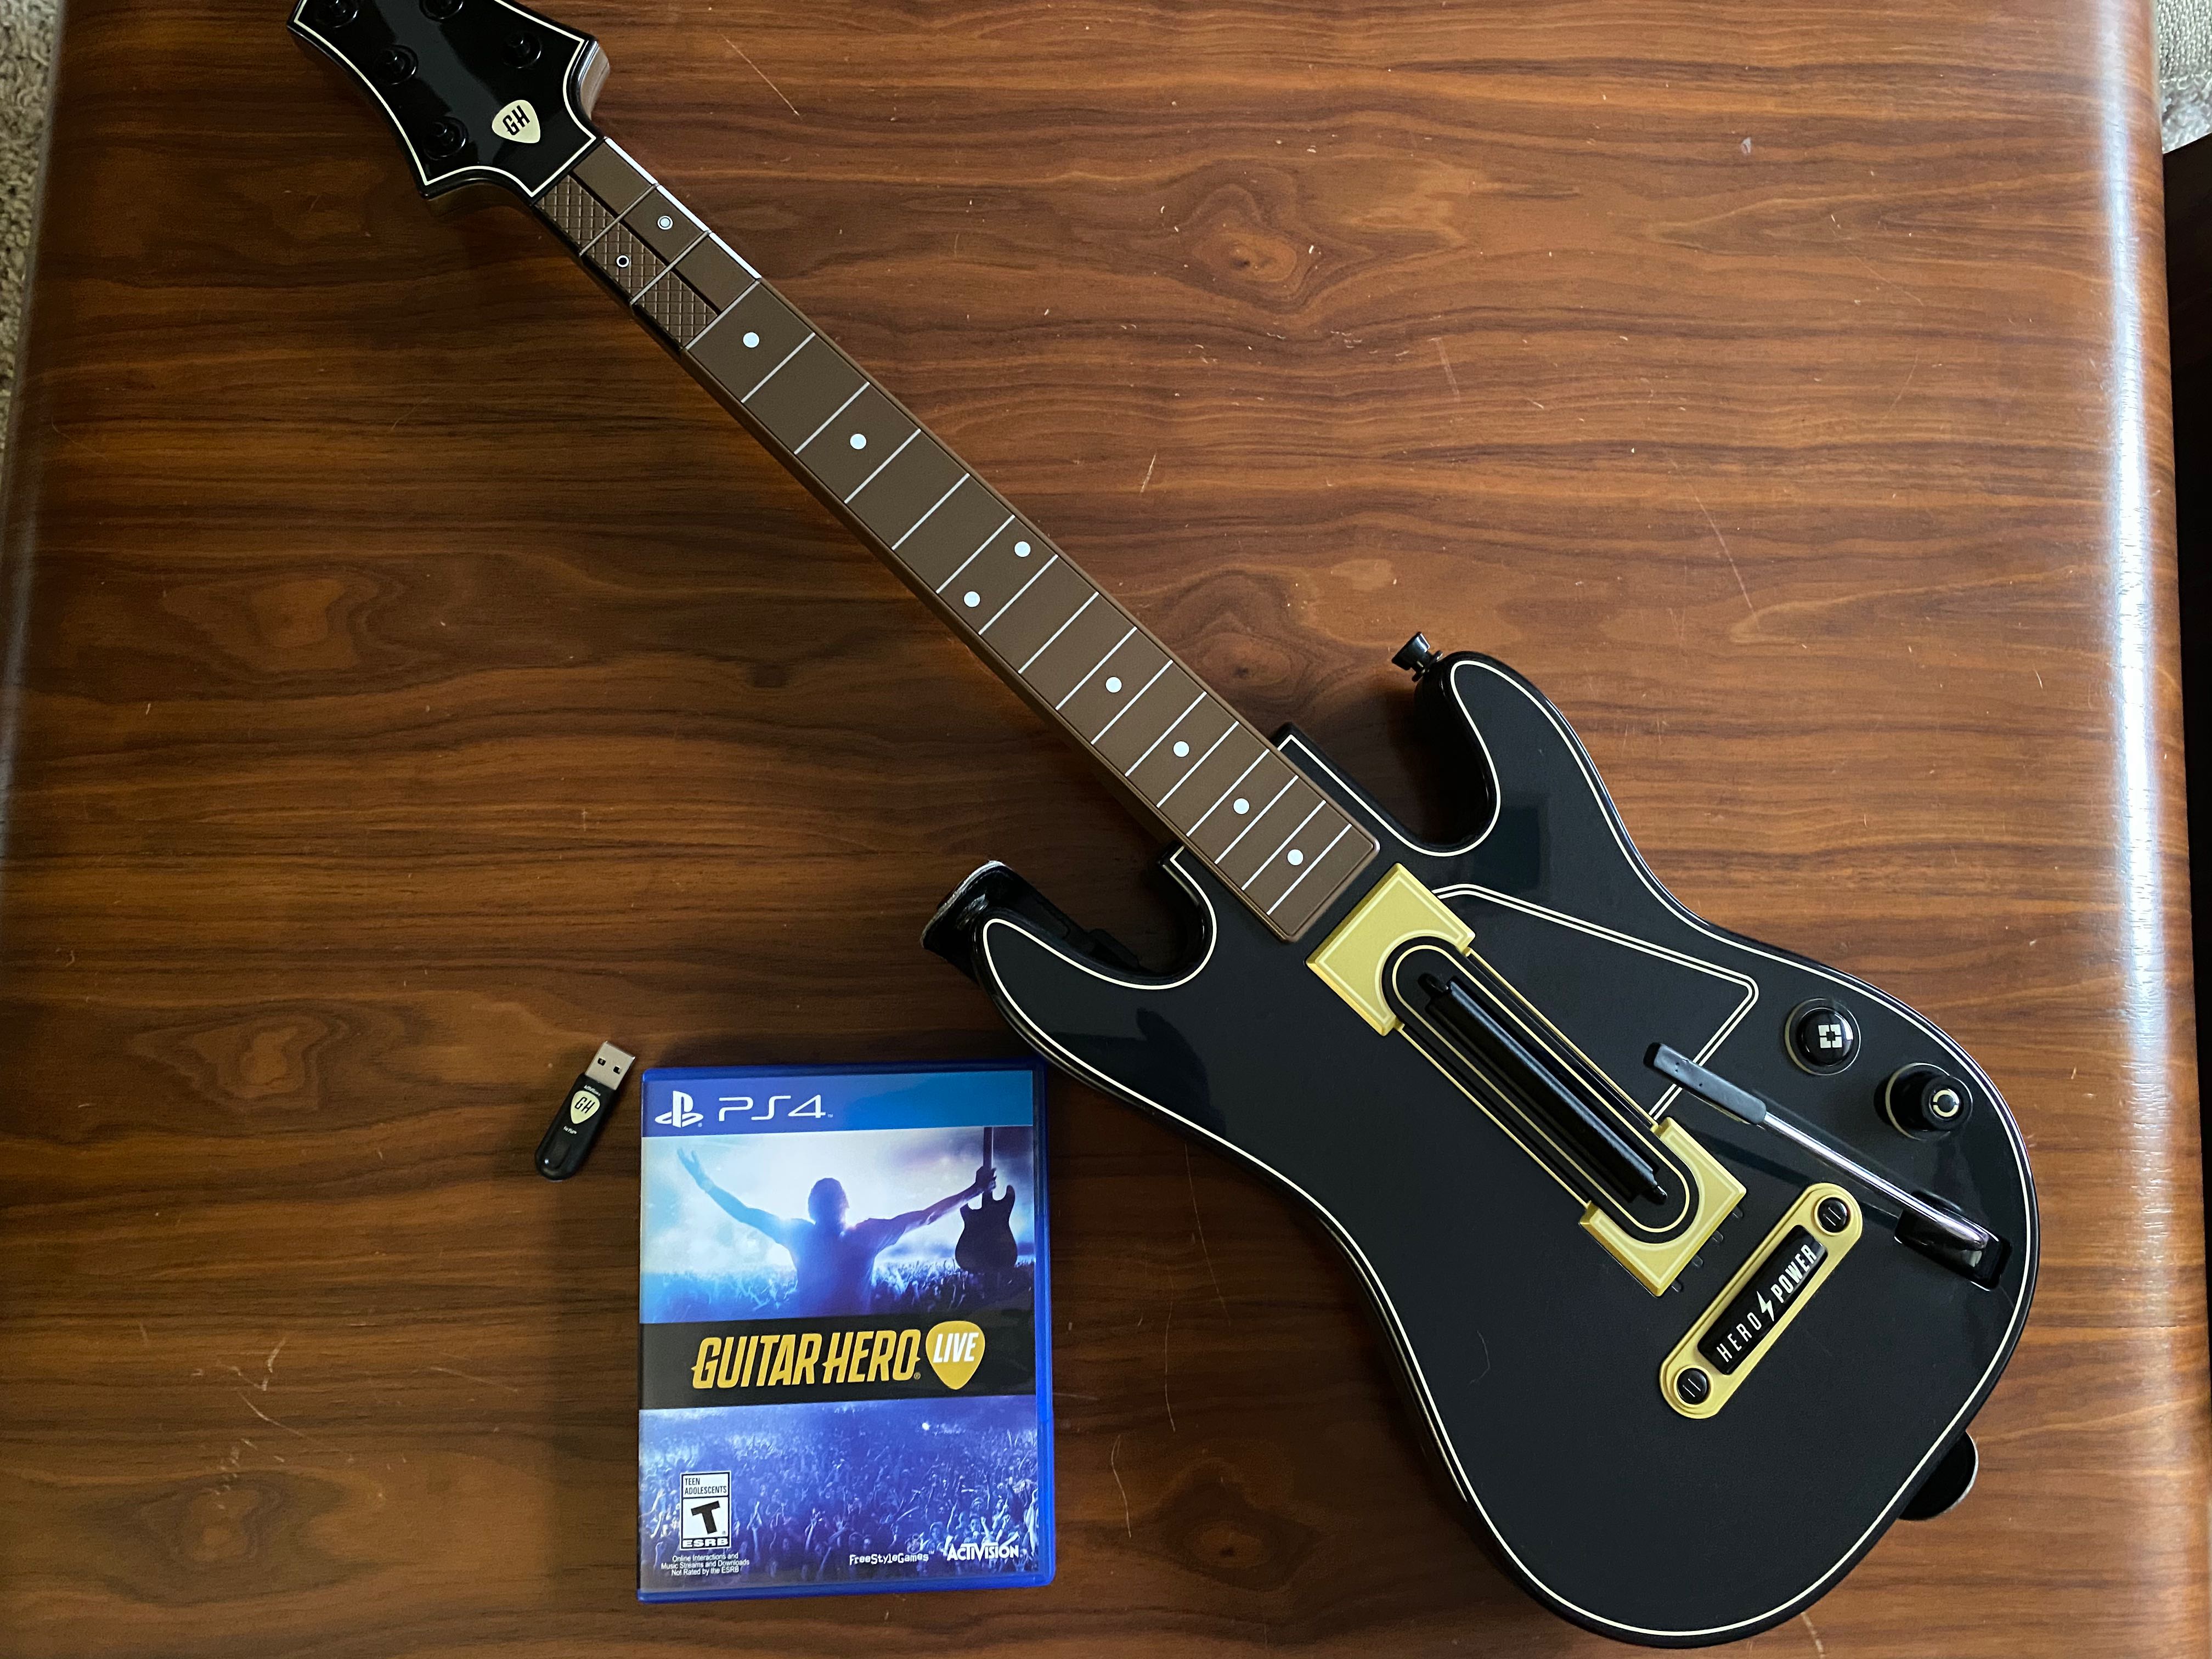  Guitar Hero Live Standalone Guitar - PlayStation 4 : Video Games